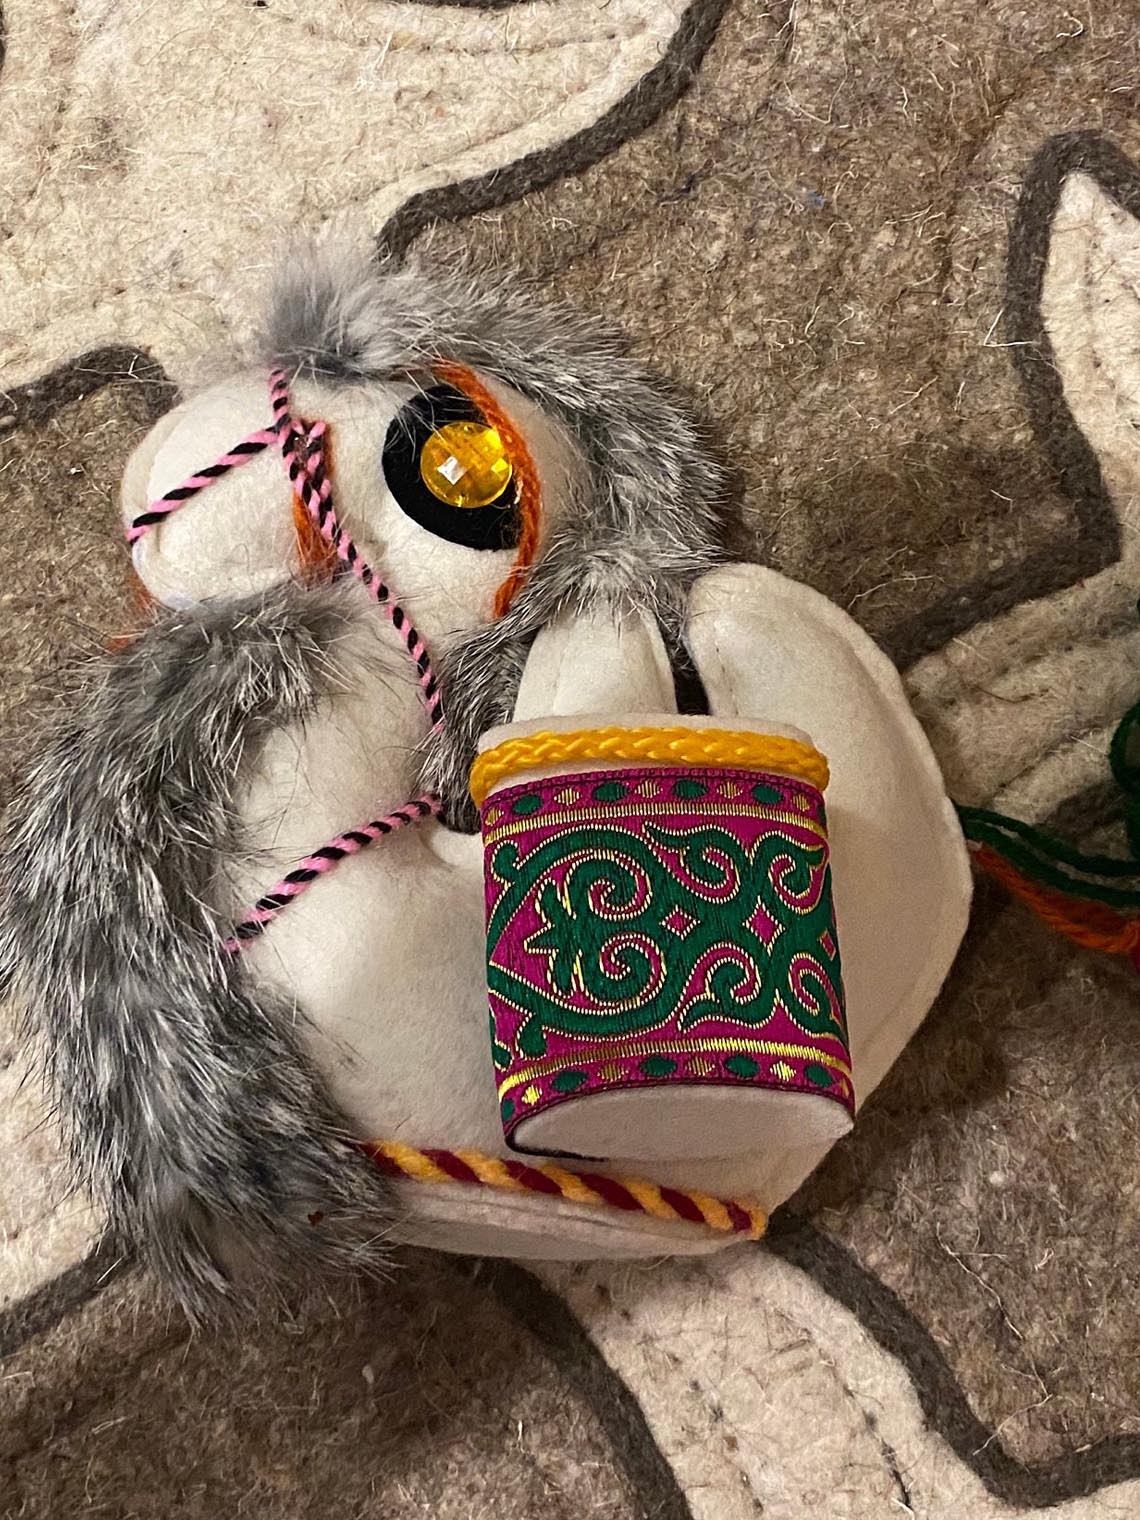 Felt cute camel souvenir from kazakhstan